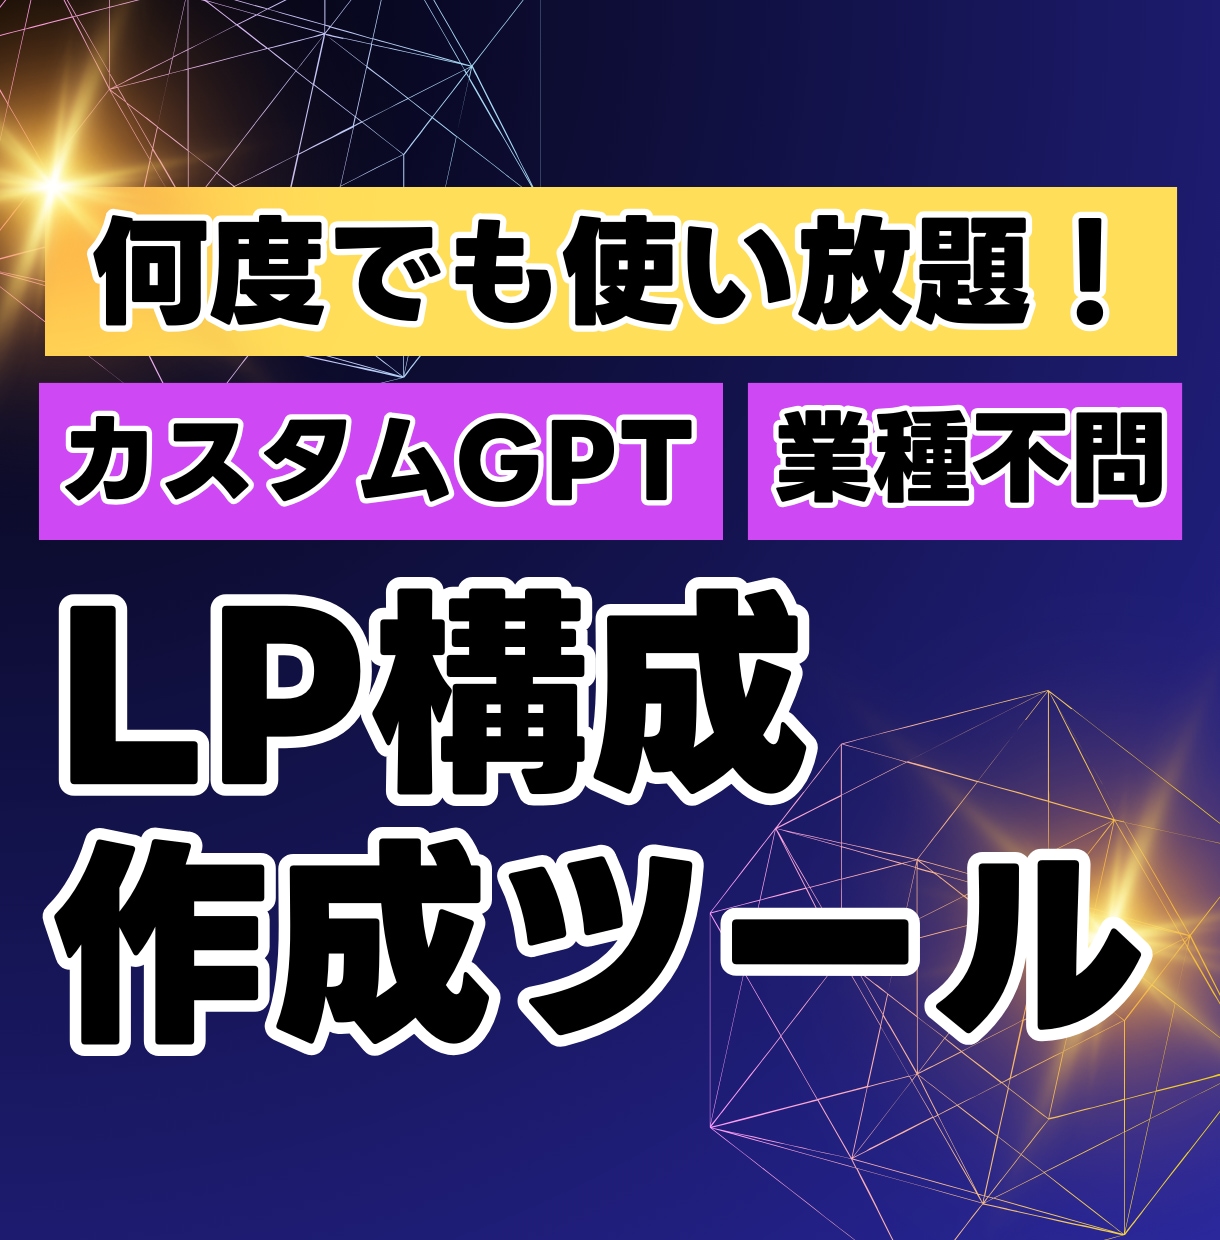 LP構成提案ツールでLP制作を圧倒的に時短できます 最先端GPTsが集客・売上・訴求力UPするLP構成を提案 イメージ1